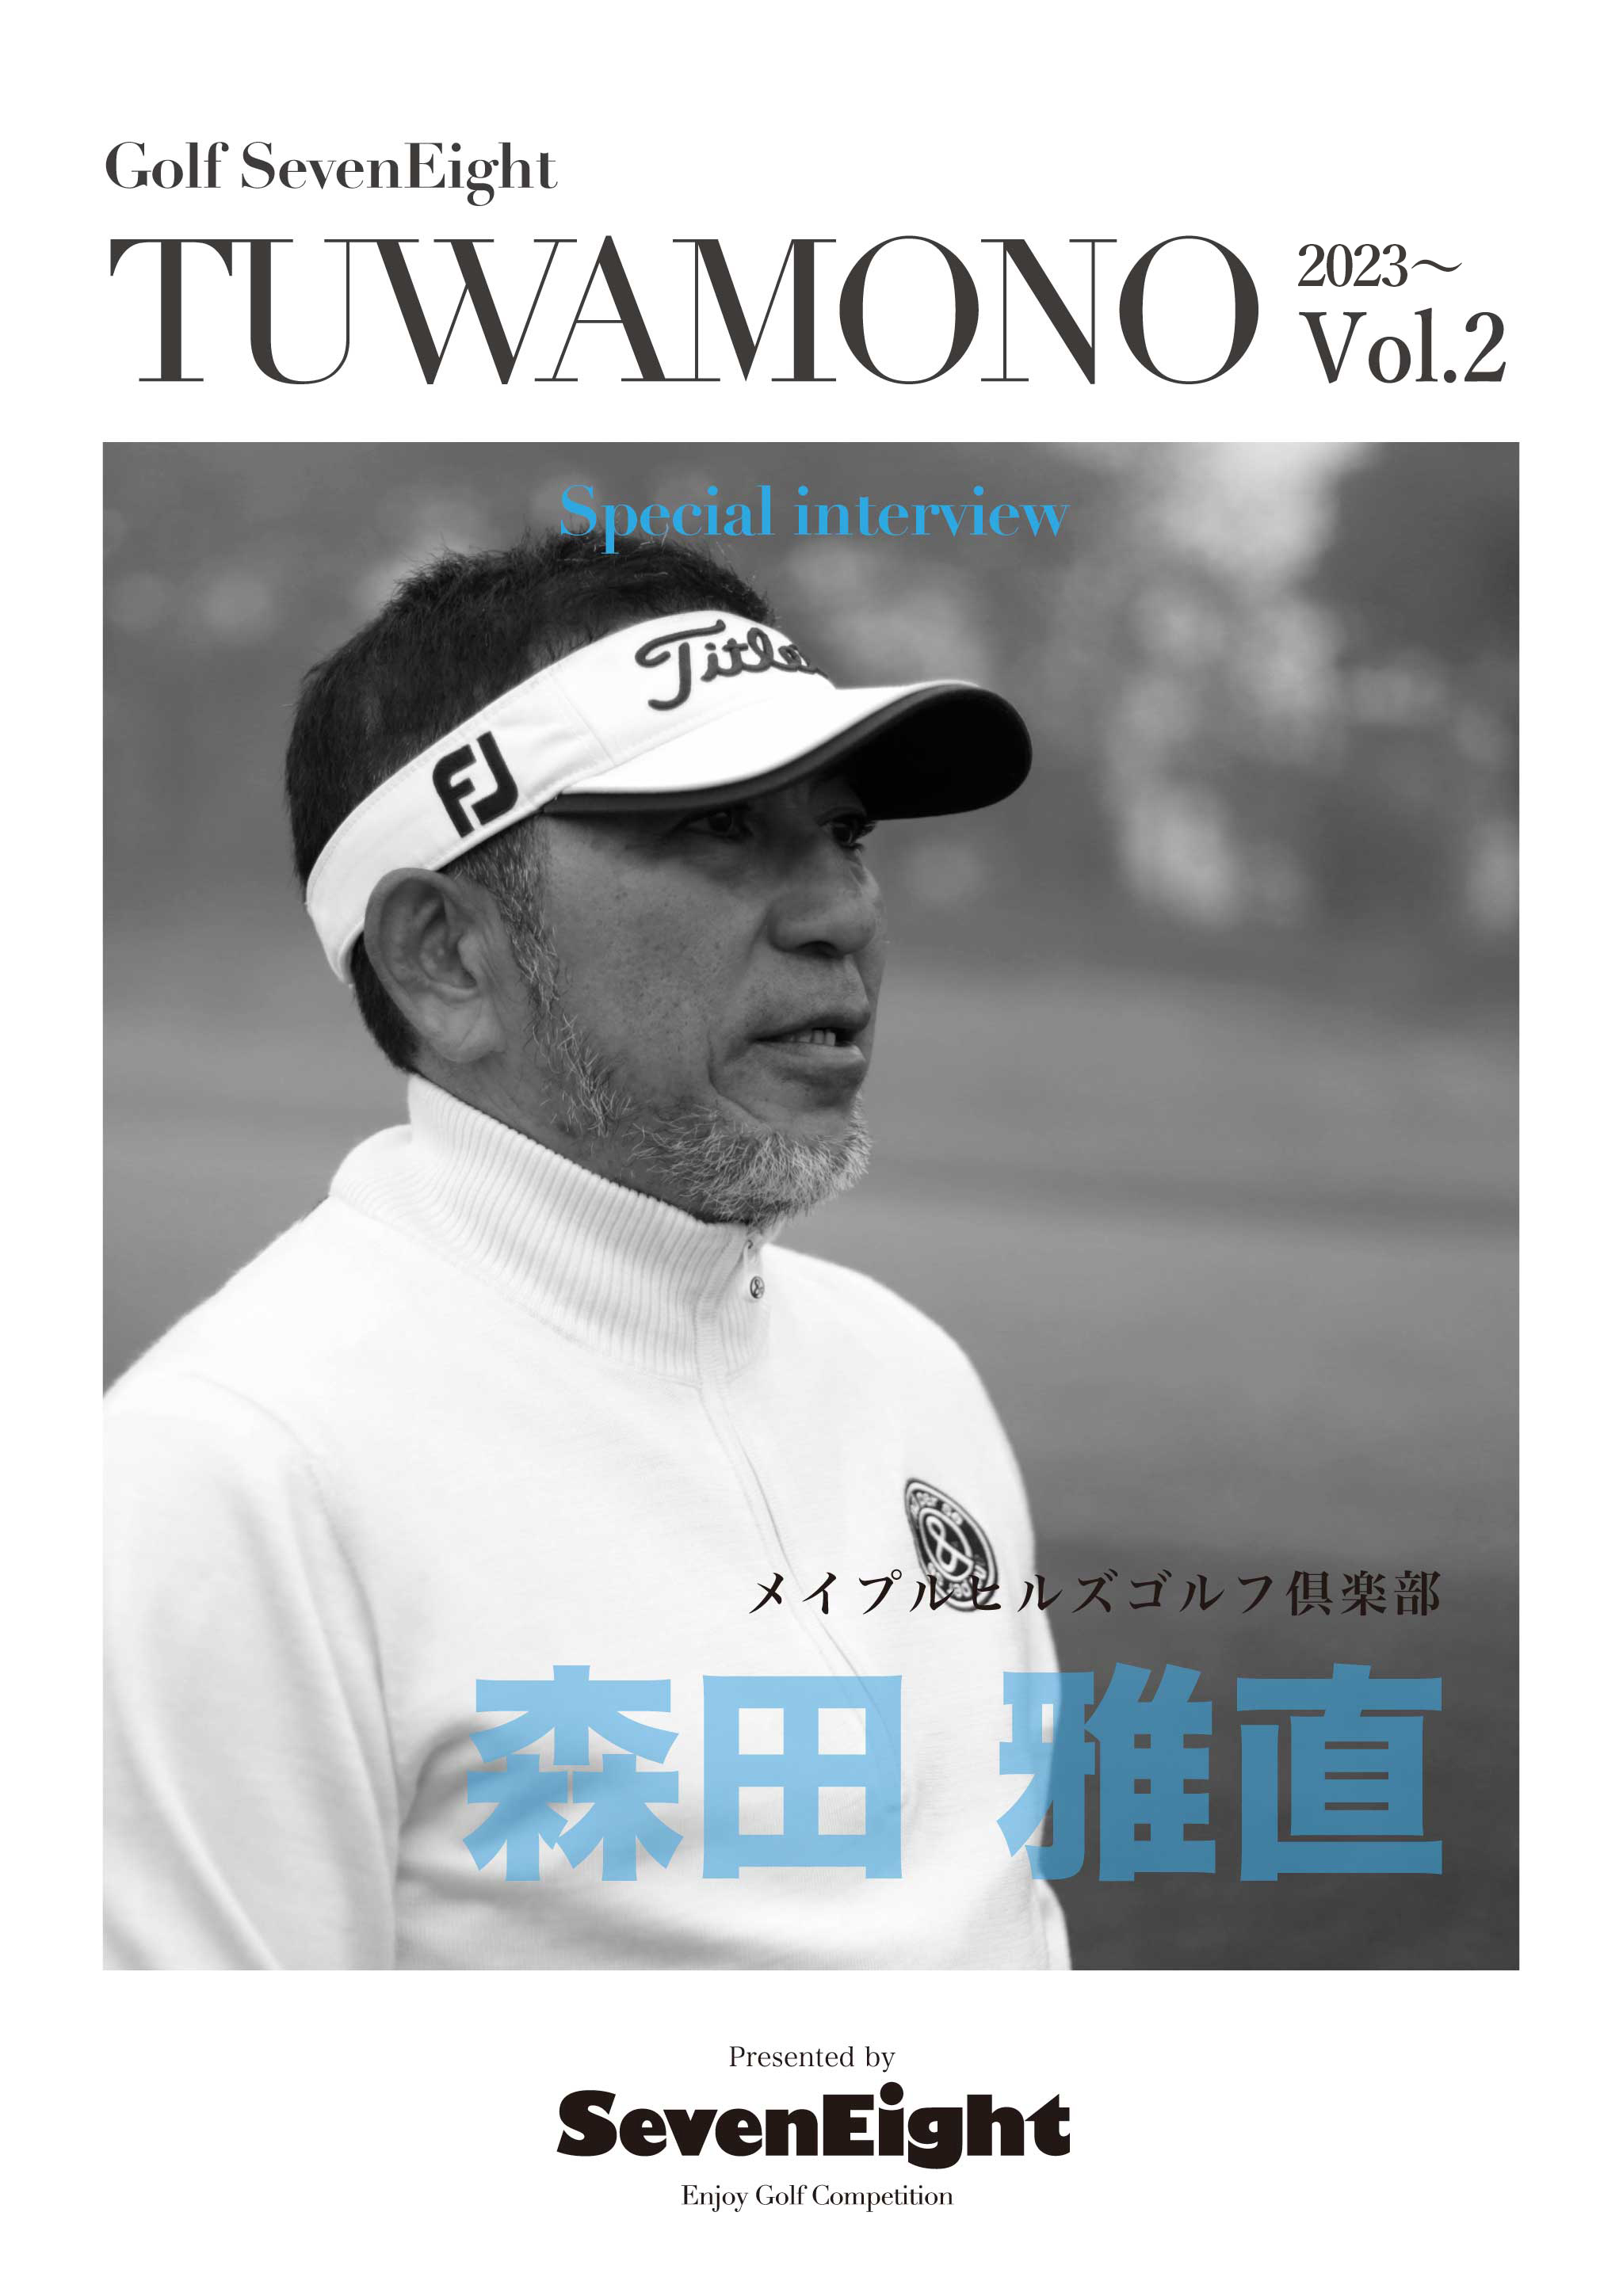 関西ゴルフサークル セブンエイトのメンバー森田雅直さんTUWAMONOインタビューページの扉